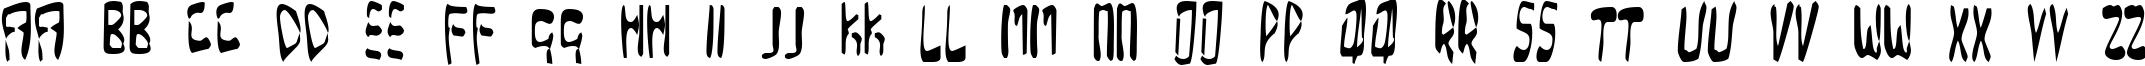 Пример написания английского алфавита шрифтом Over Expose